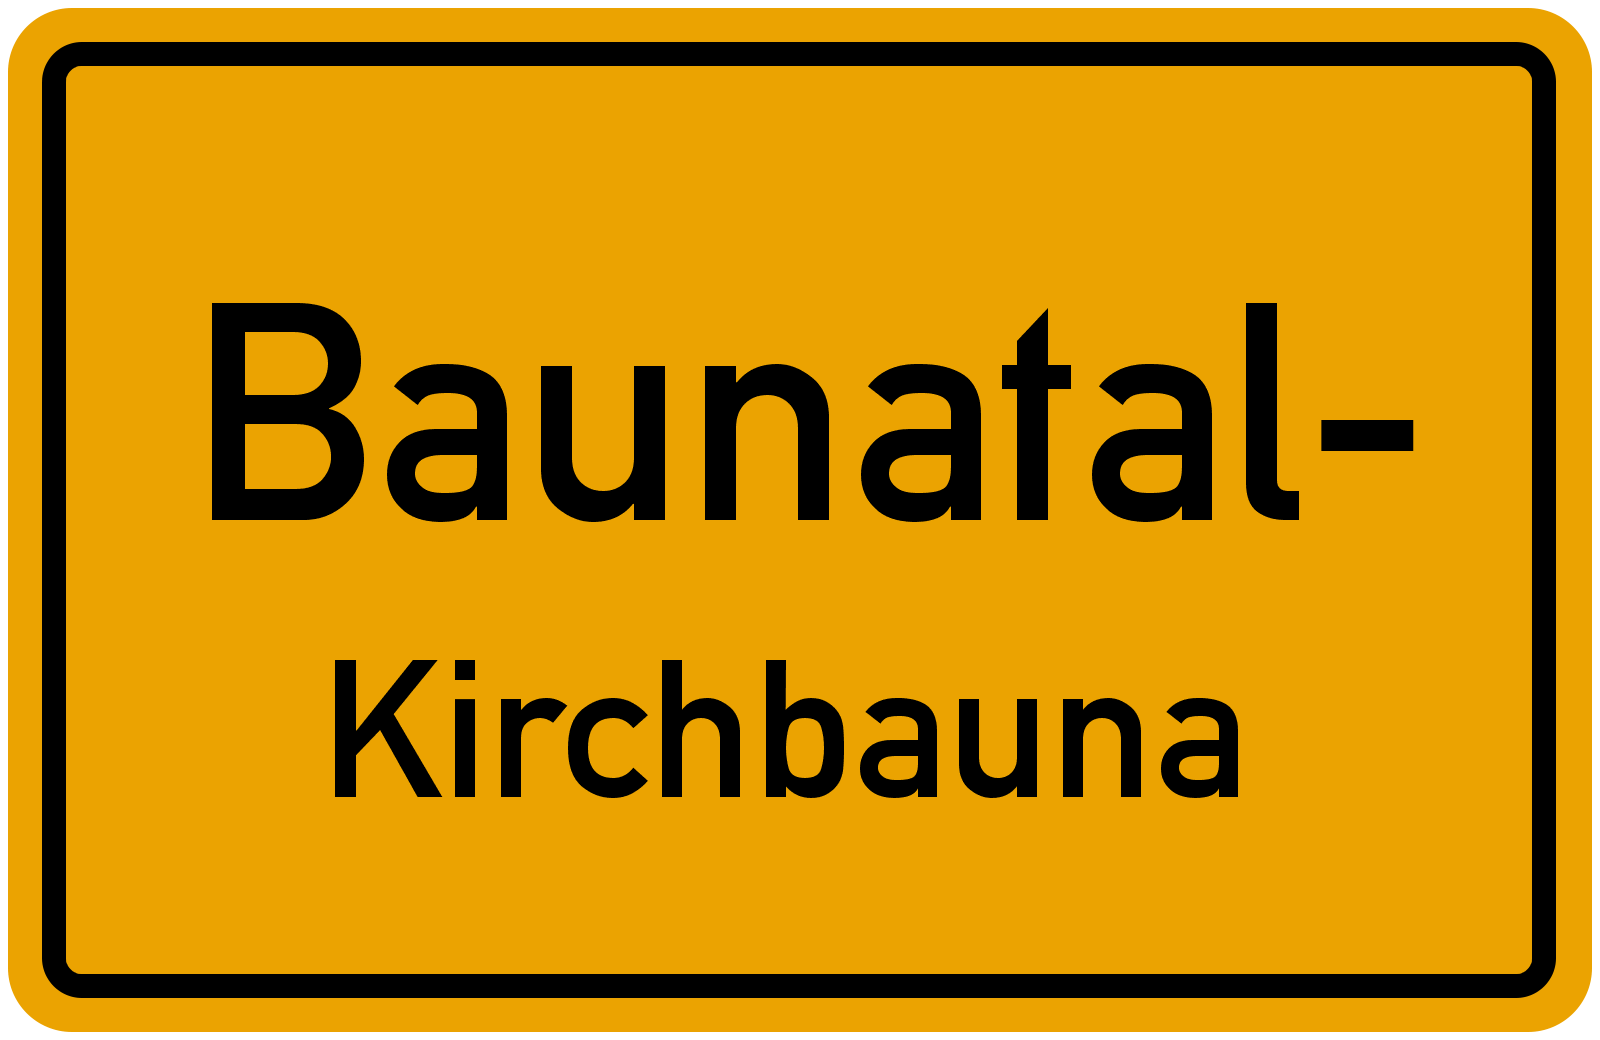 Kirchbauna